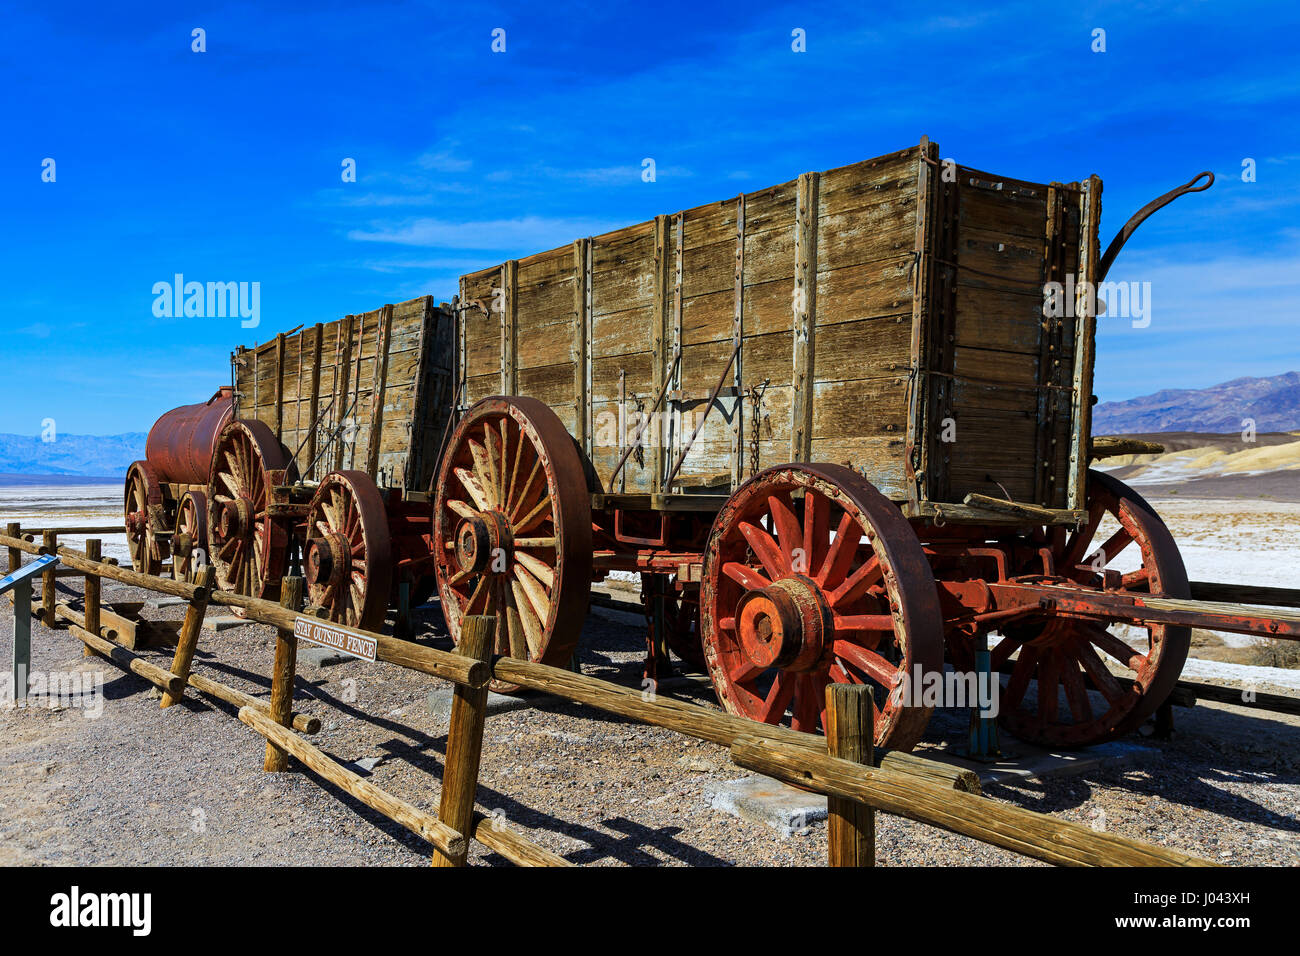 Dies ist eine Ansicht von zwei der 20 Mule Team-Erz-Wagen und einem Wasser-Wagen auf dem Display an der Harmony Borax Works in Death Valley Nationalpark, Kalifornien Stockfoto